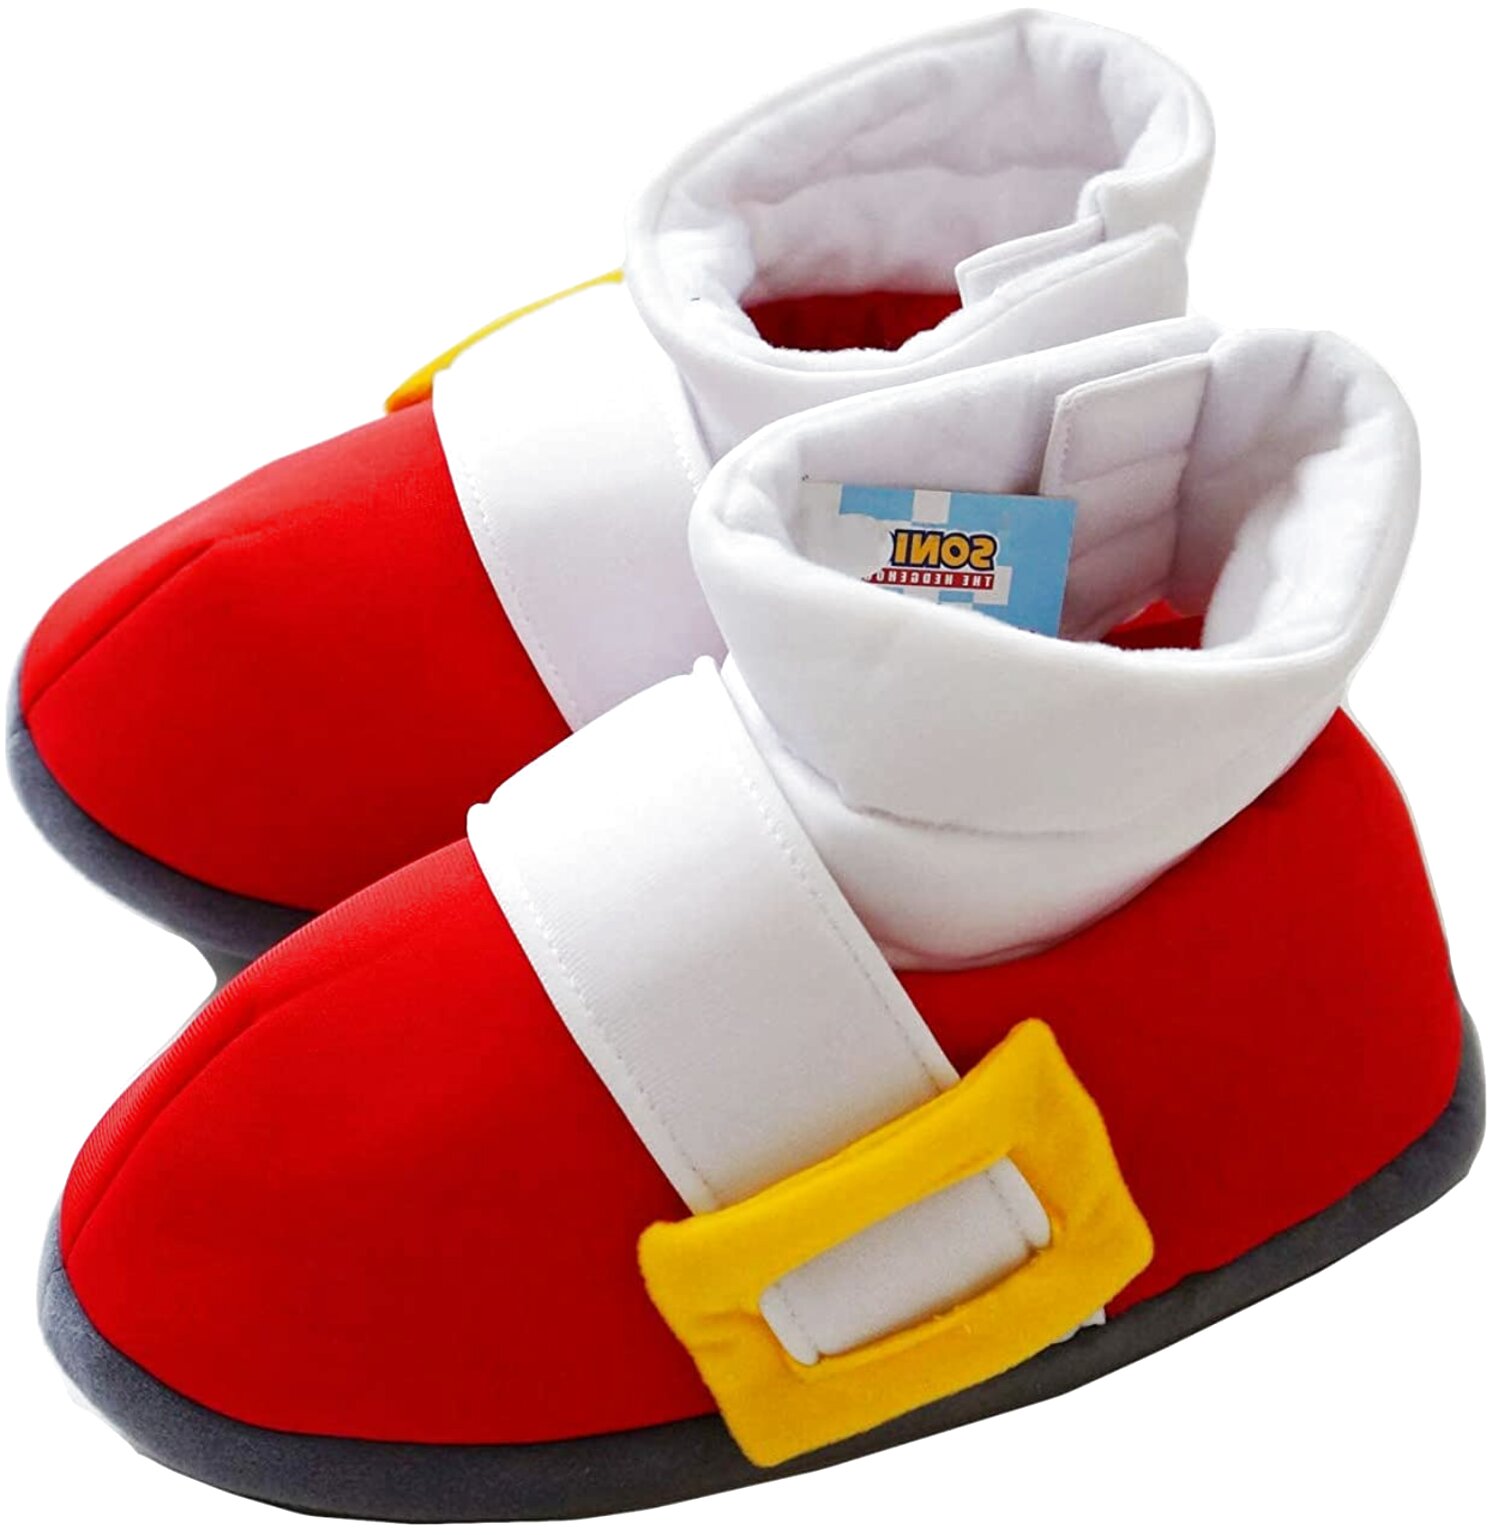 sonic slippers uk